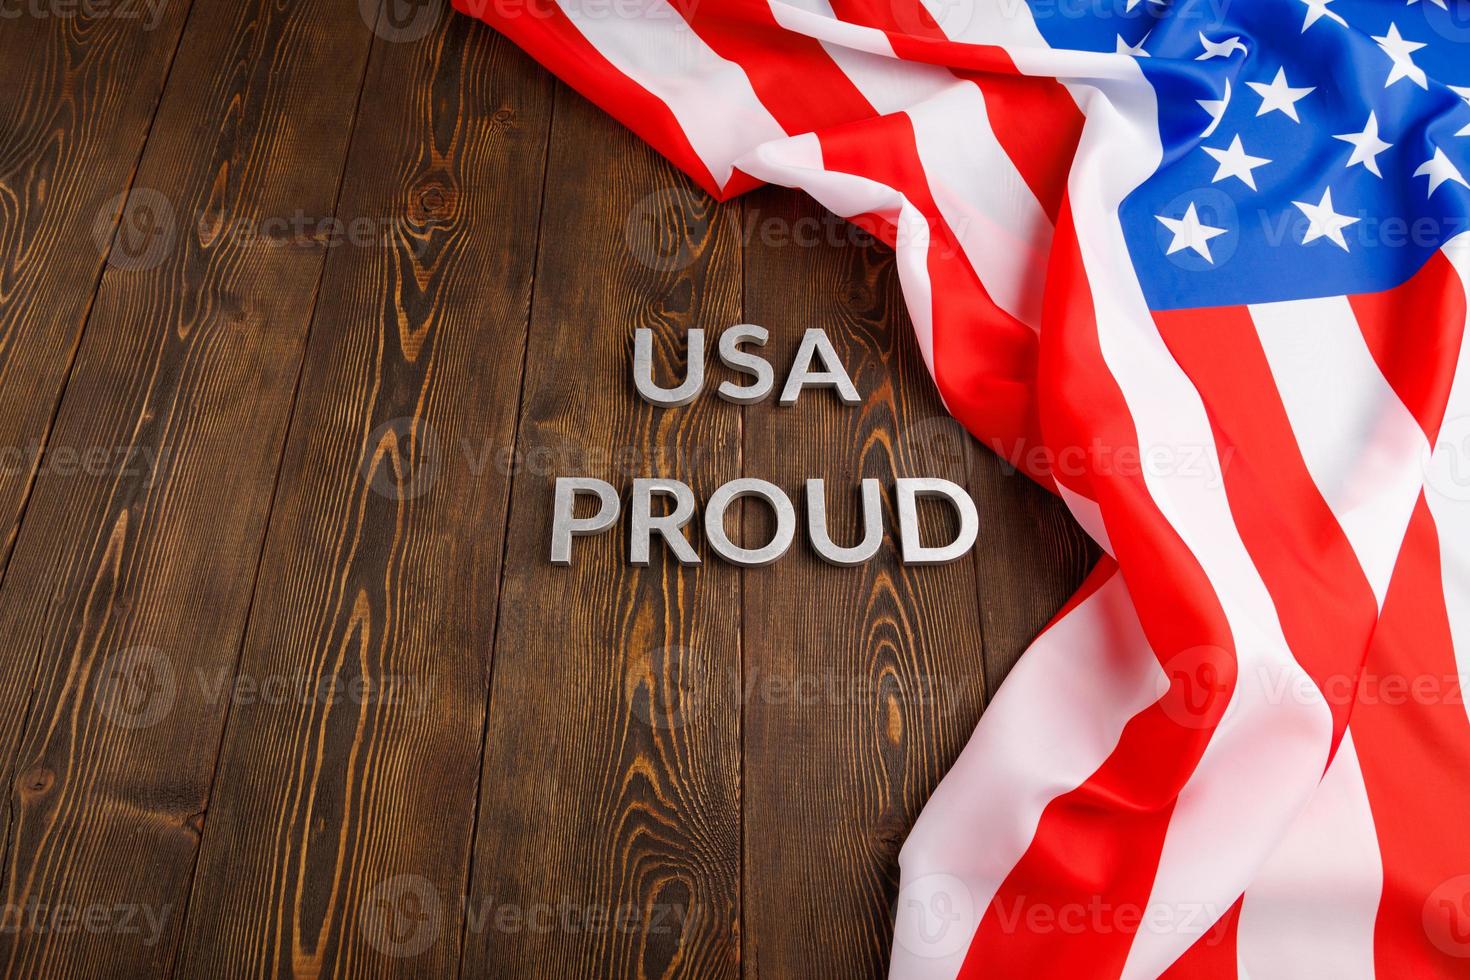 palavras eua orgulhoso colocado com letras de metal prateado na superfície de madeira marrom com bandeira dos estados unidos da américa foto